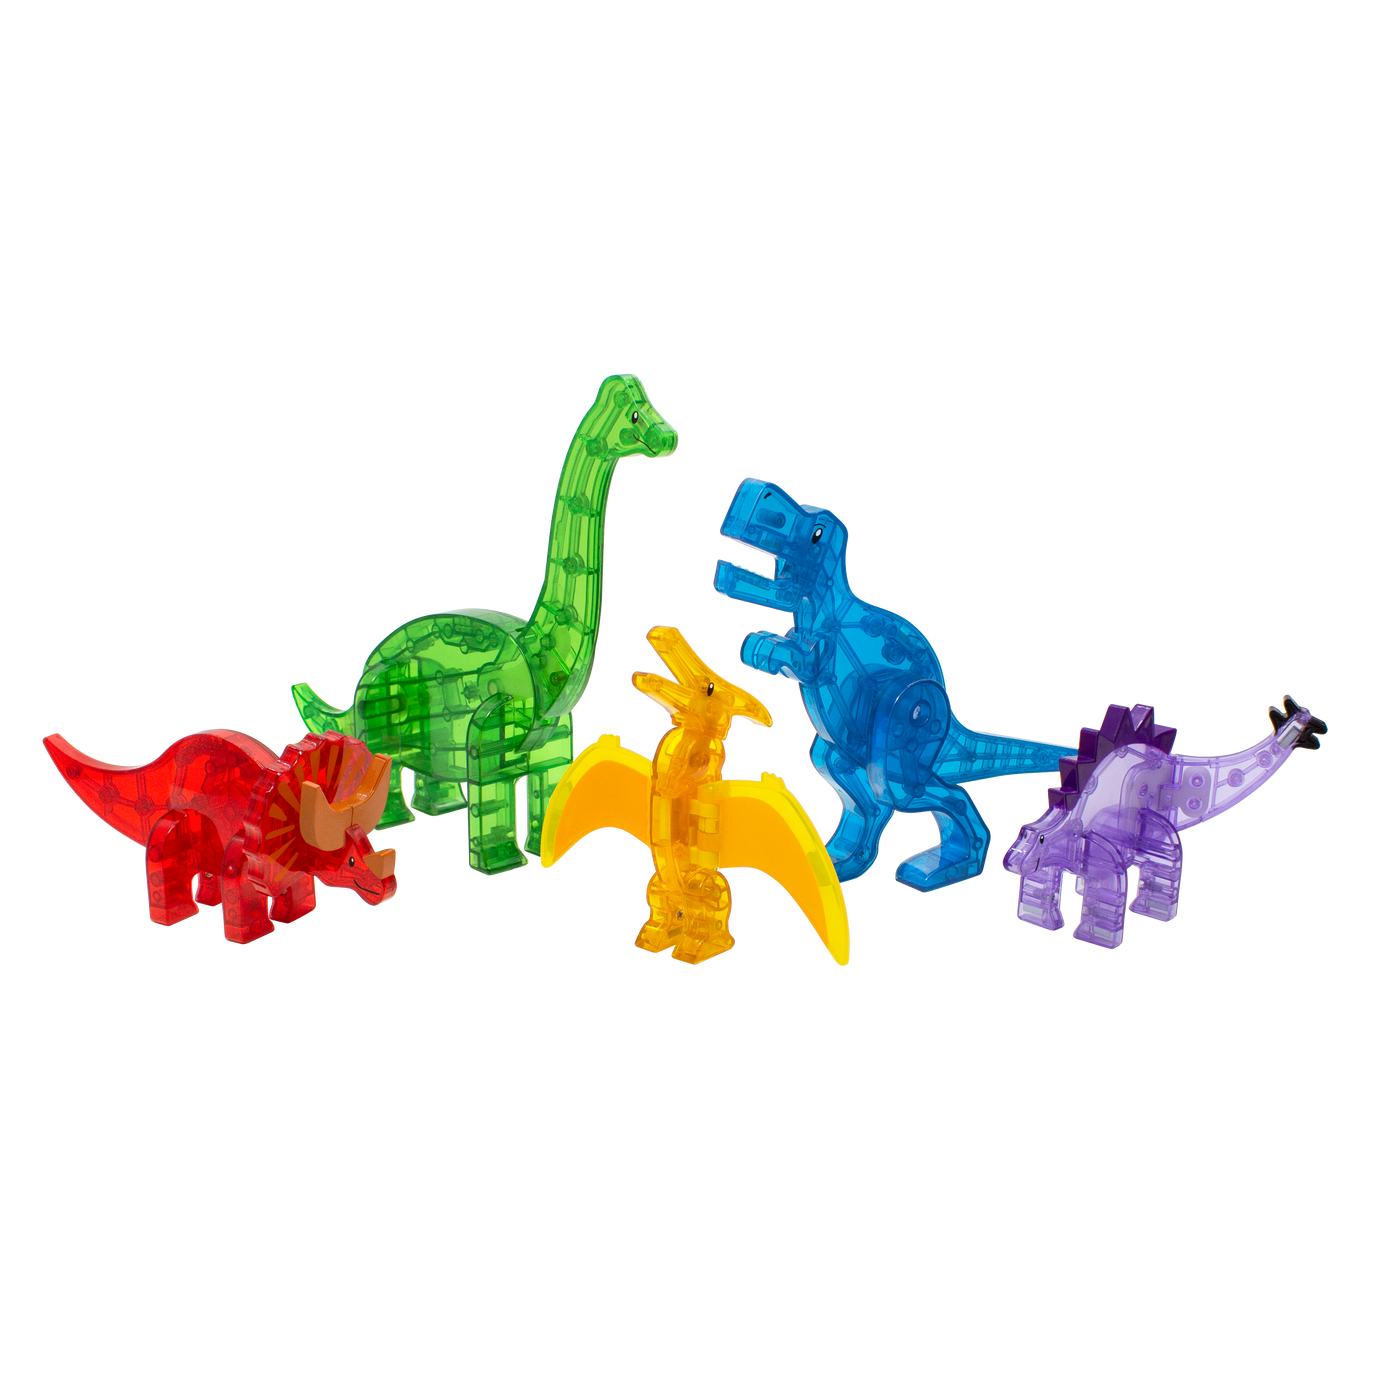 Magna-Tiles Dinofigurer